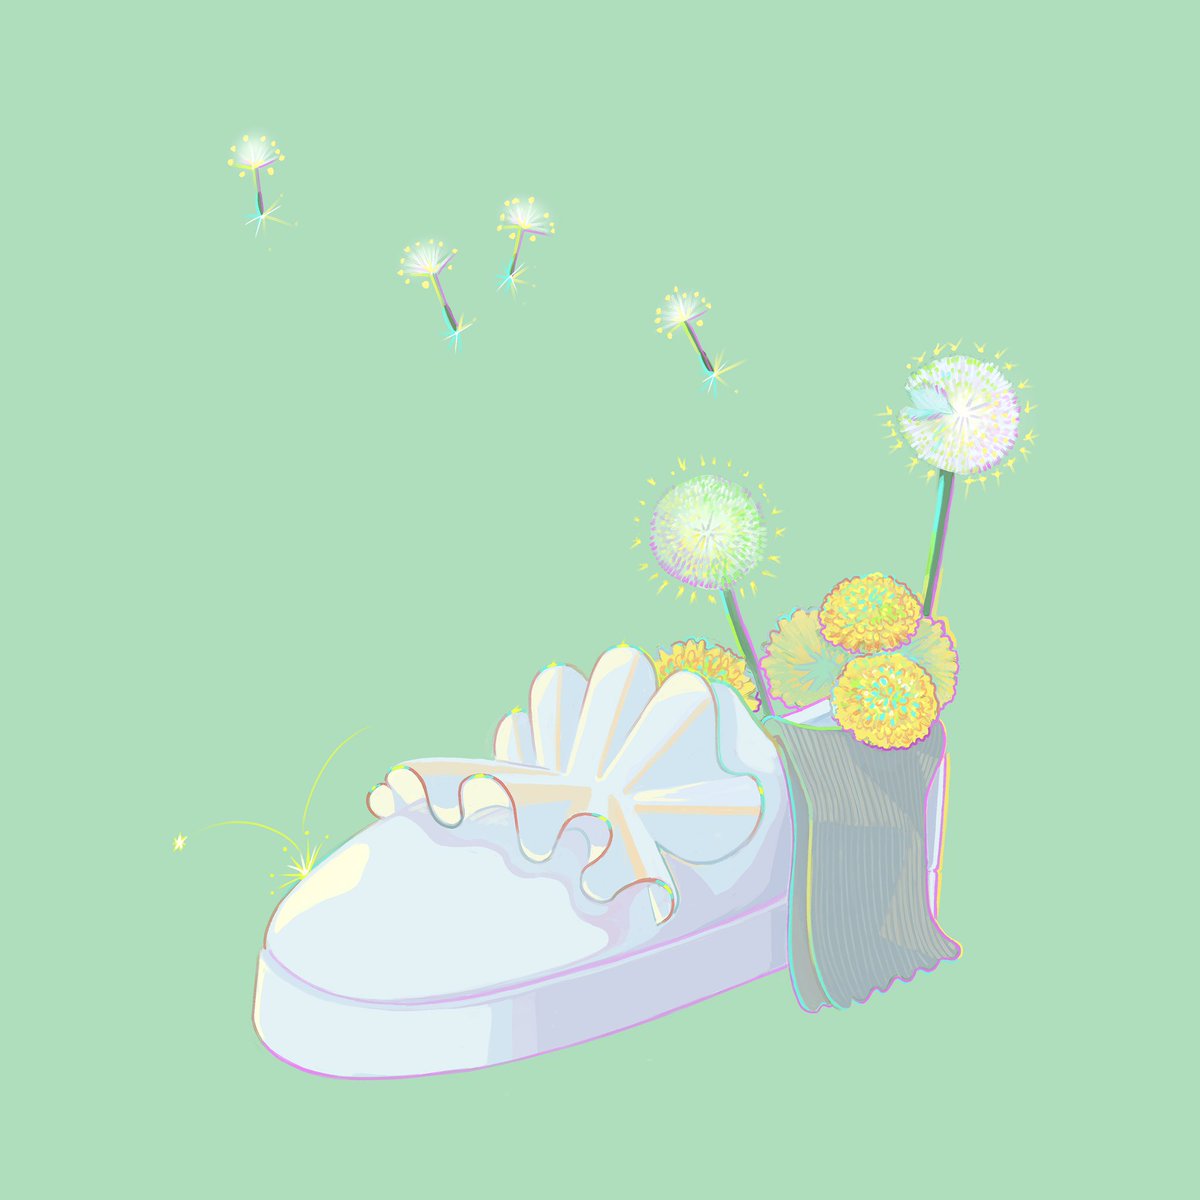 「お出かけできないので、
靴に花を生けました??? 」|mashuのイラスト